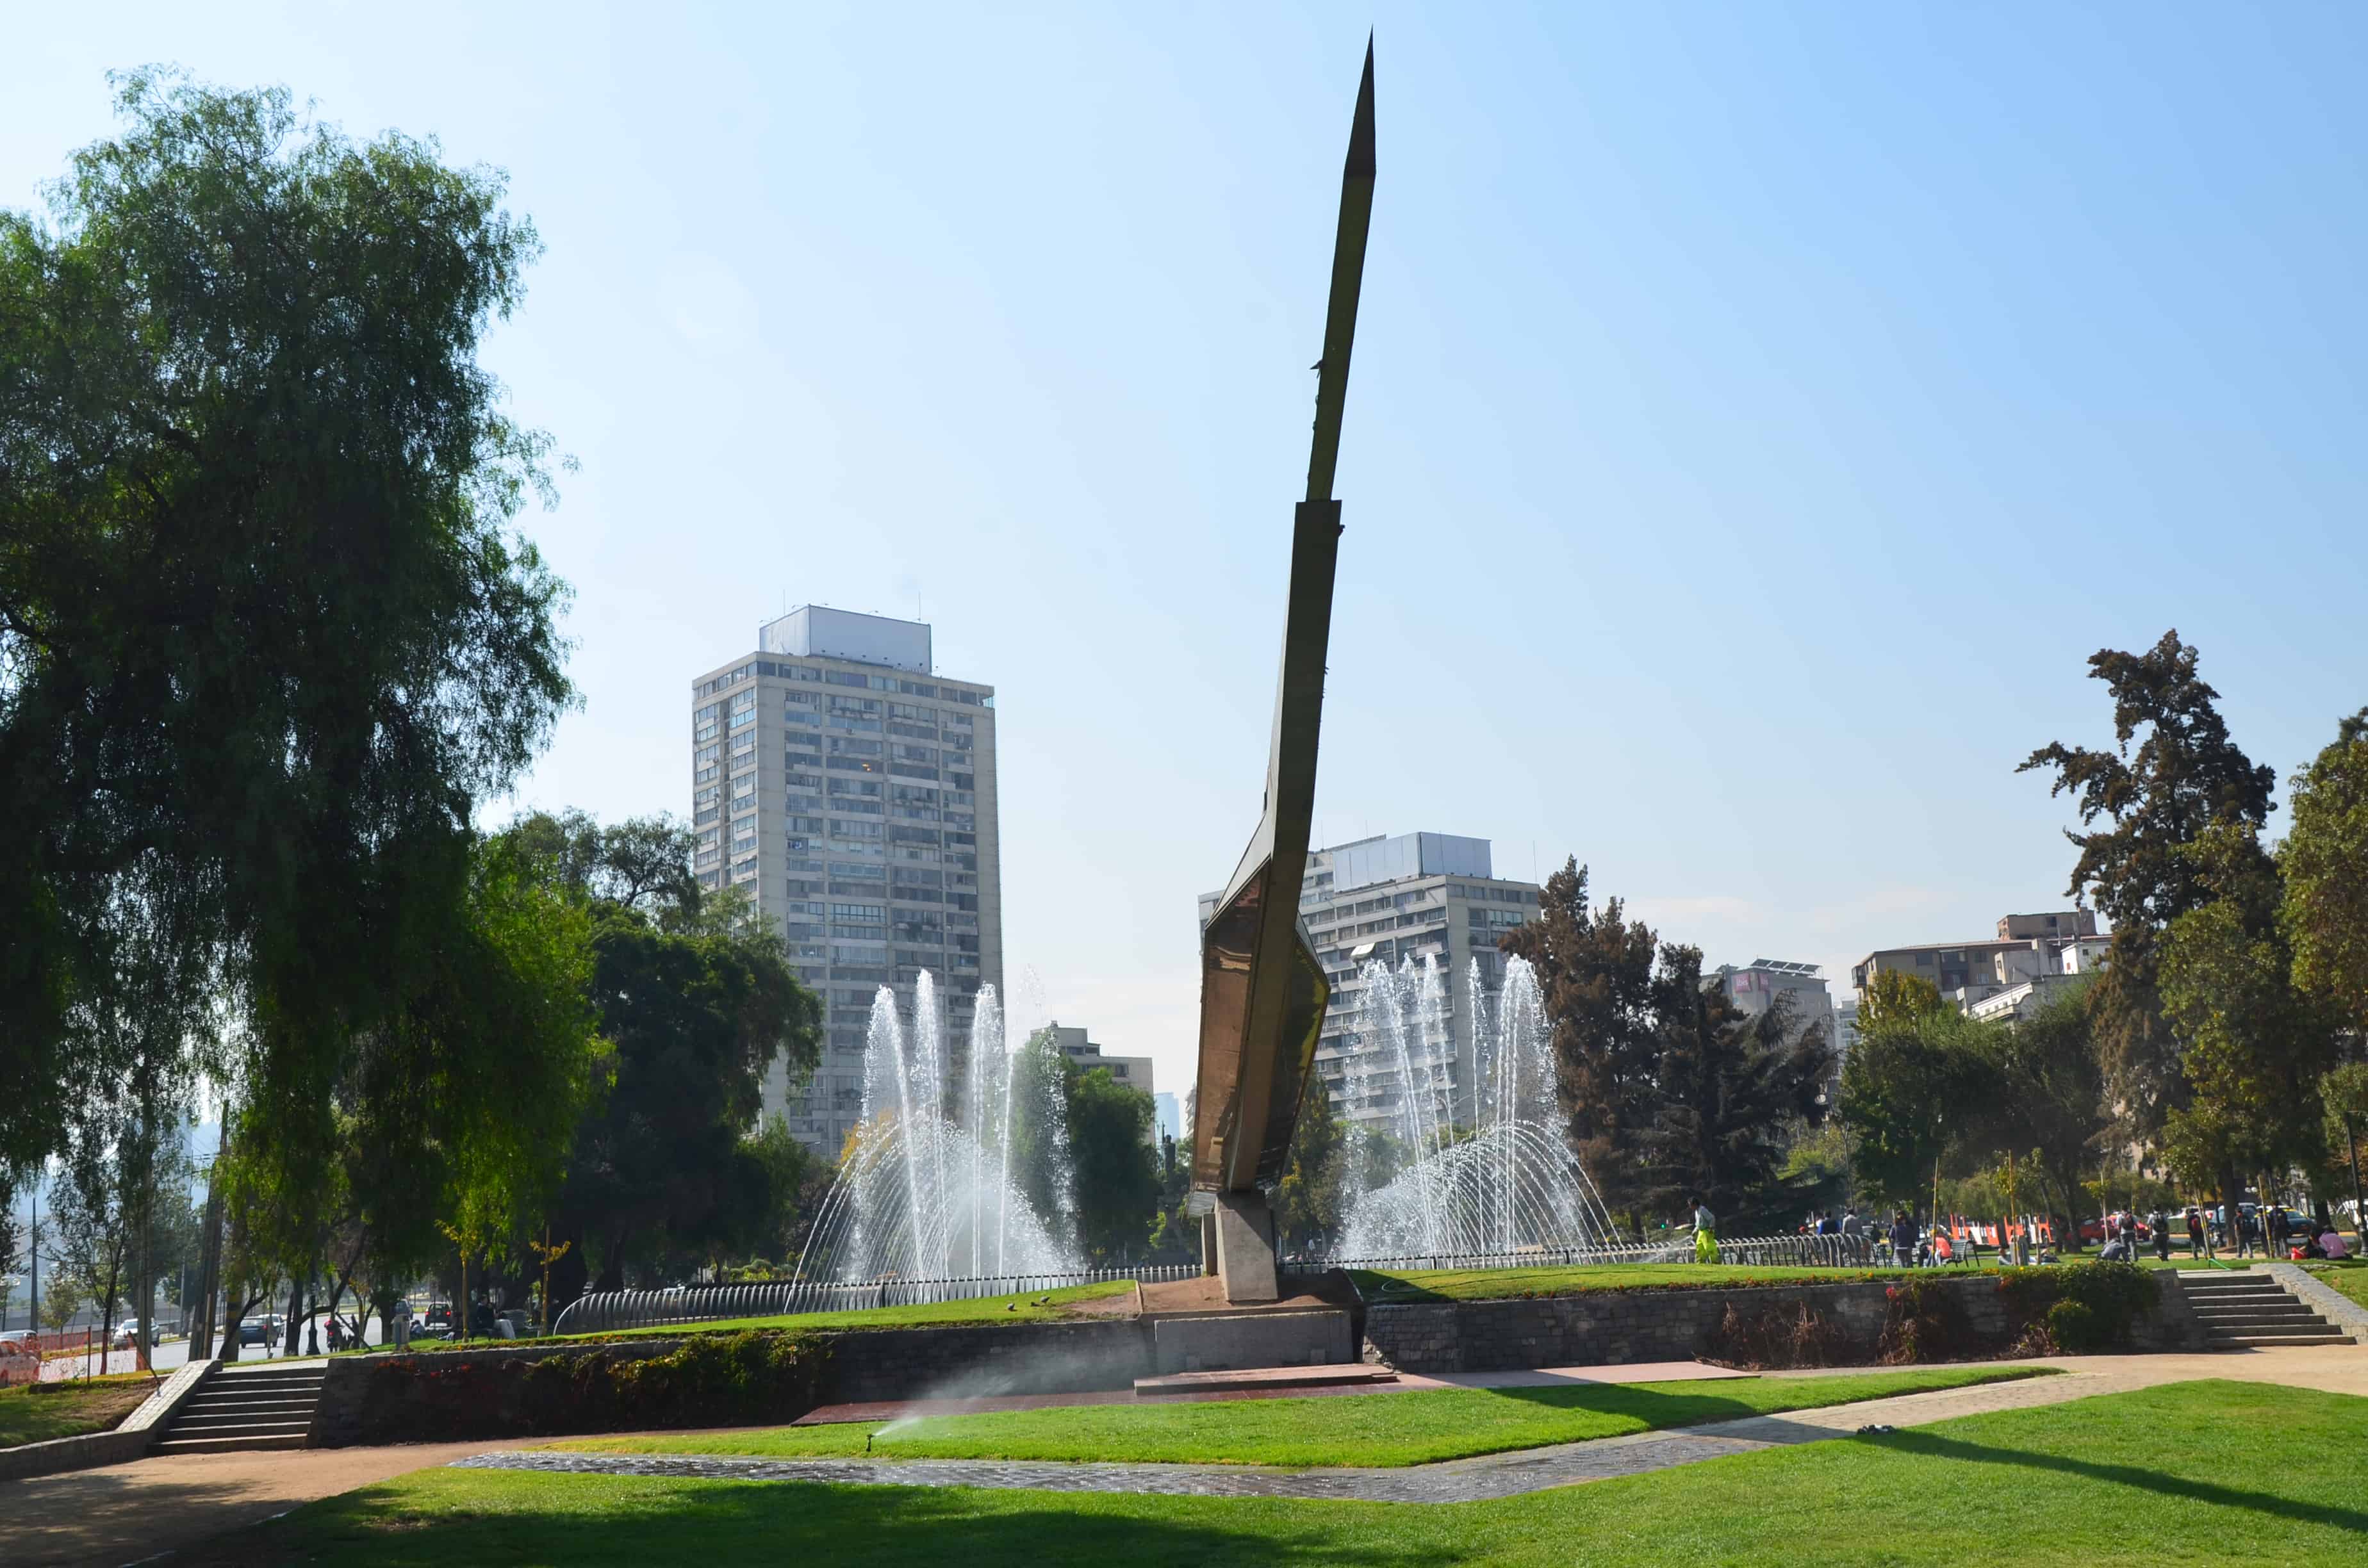 Parque de la Aviación in Santiago de Chile